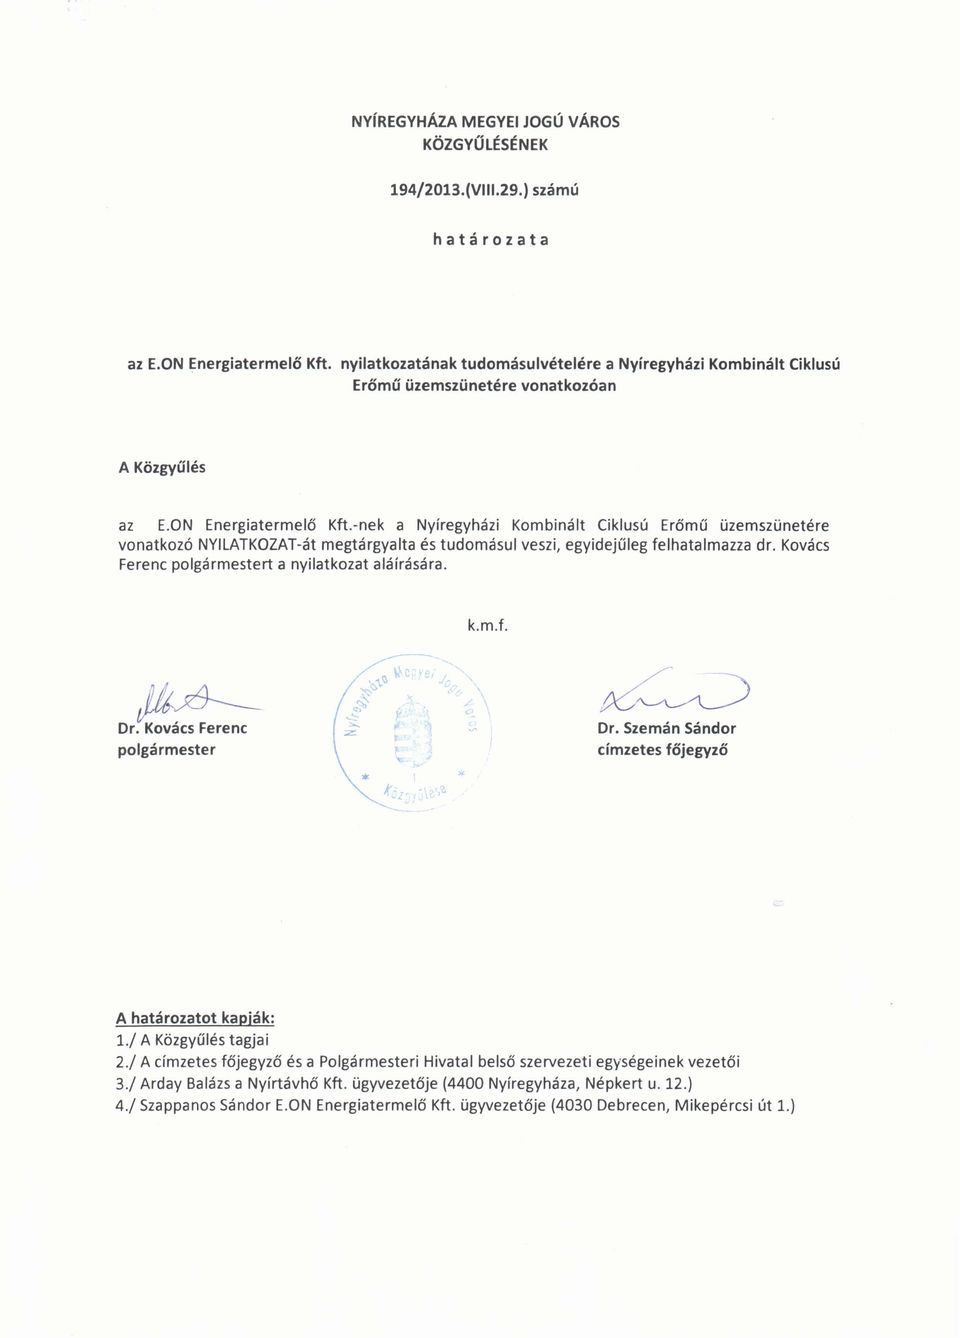 -nek a Nyíregyházi Kombinált Ciklusú Erőmű üzemszünetére vonatkozó NYILATKOZAT-át megtárgyalta és tudomásul veszi, egyidejűleg felhatalmazza dr. Kovács Ferenc polgármestert a nyilatkozat aláírására.